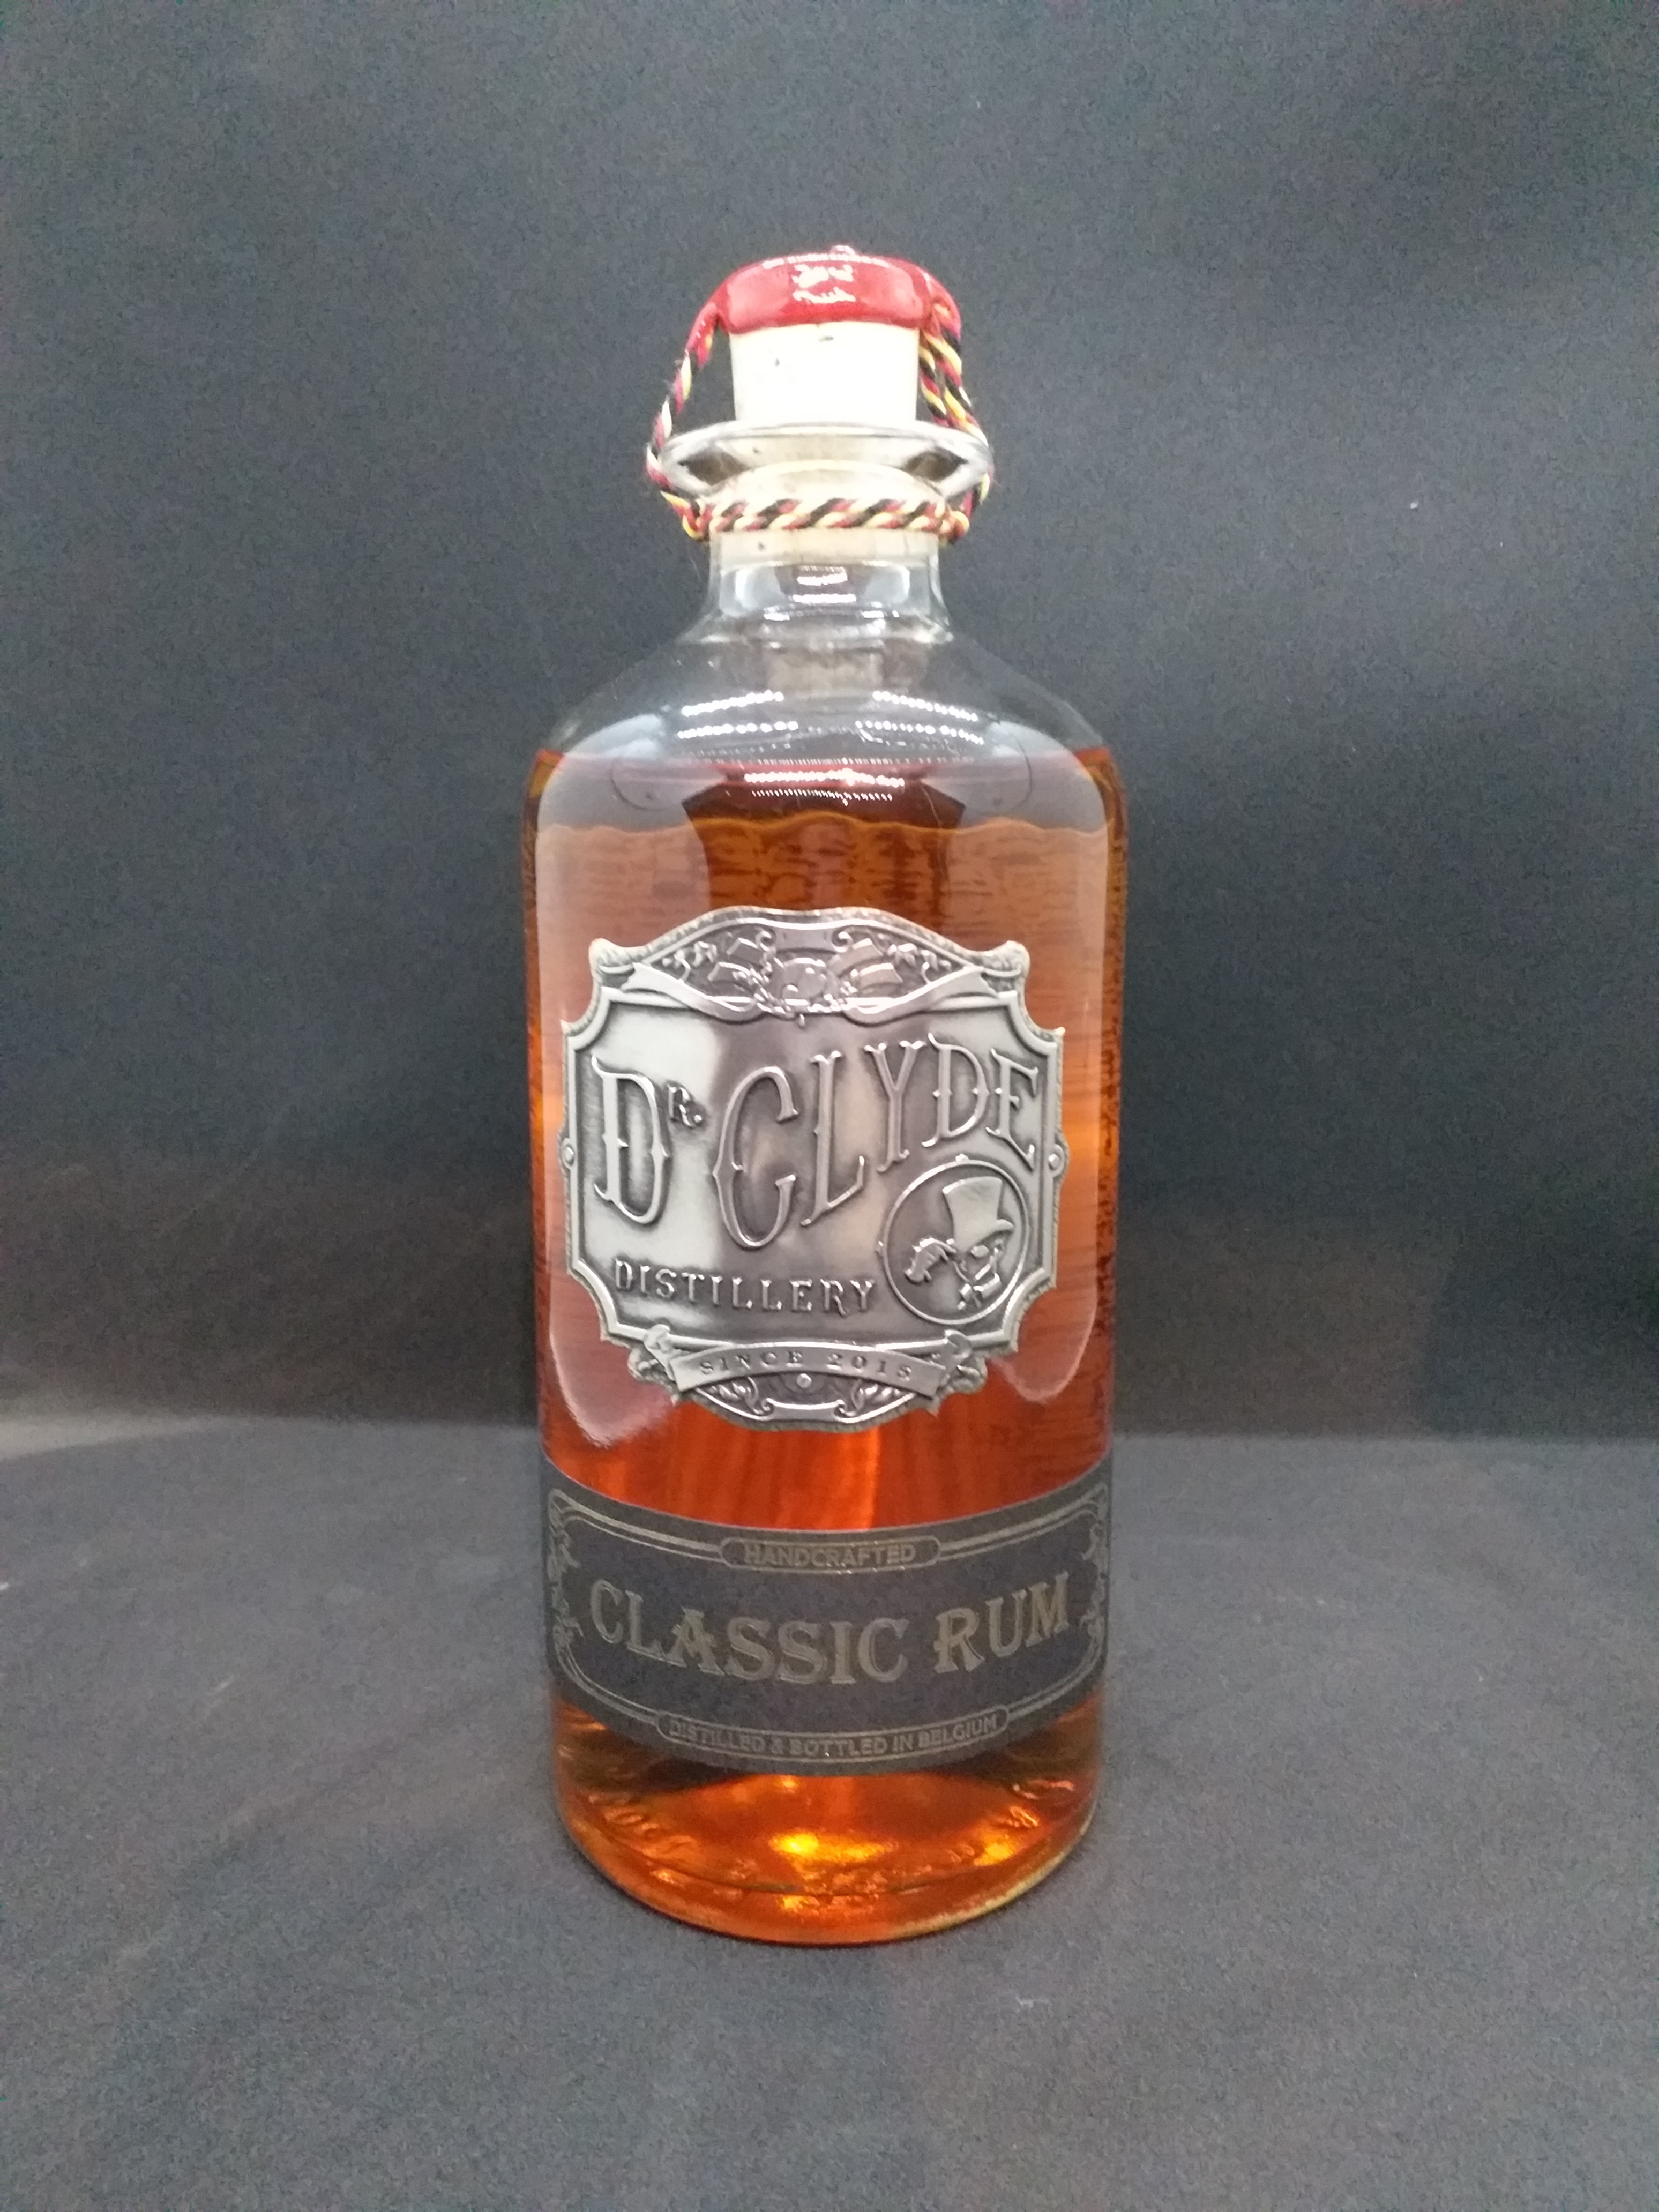 Le Classic Rum du Dr Clyde (c) Dr Clyde